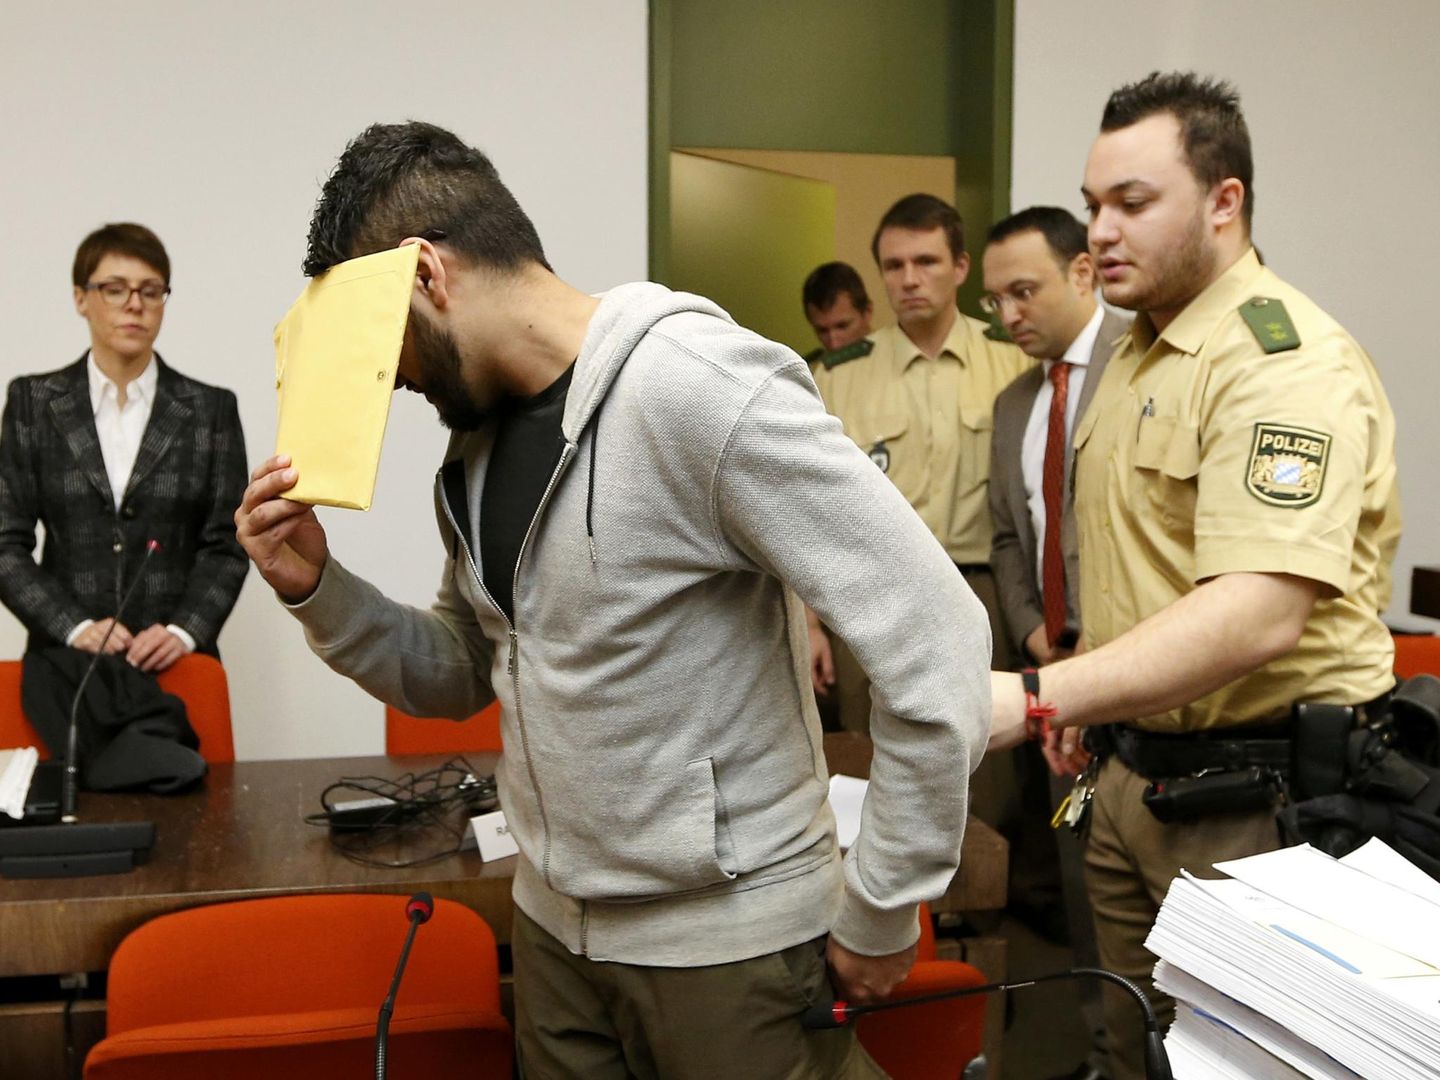 El sospechoso Harun P., durante su juicio en Múnich por presunta pertenencia al Estado Islámico, el 20 de enero de 2015. (Reuters)